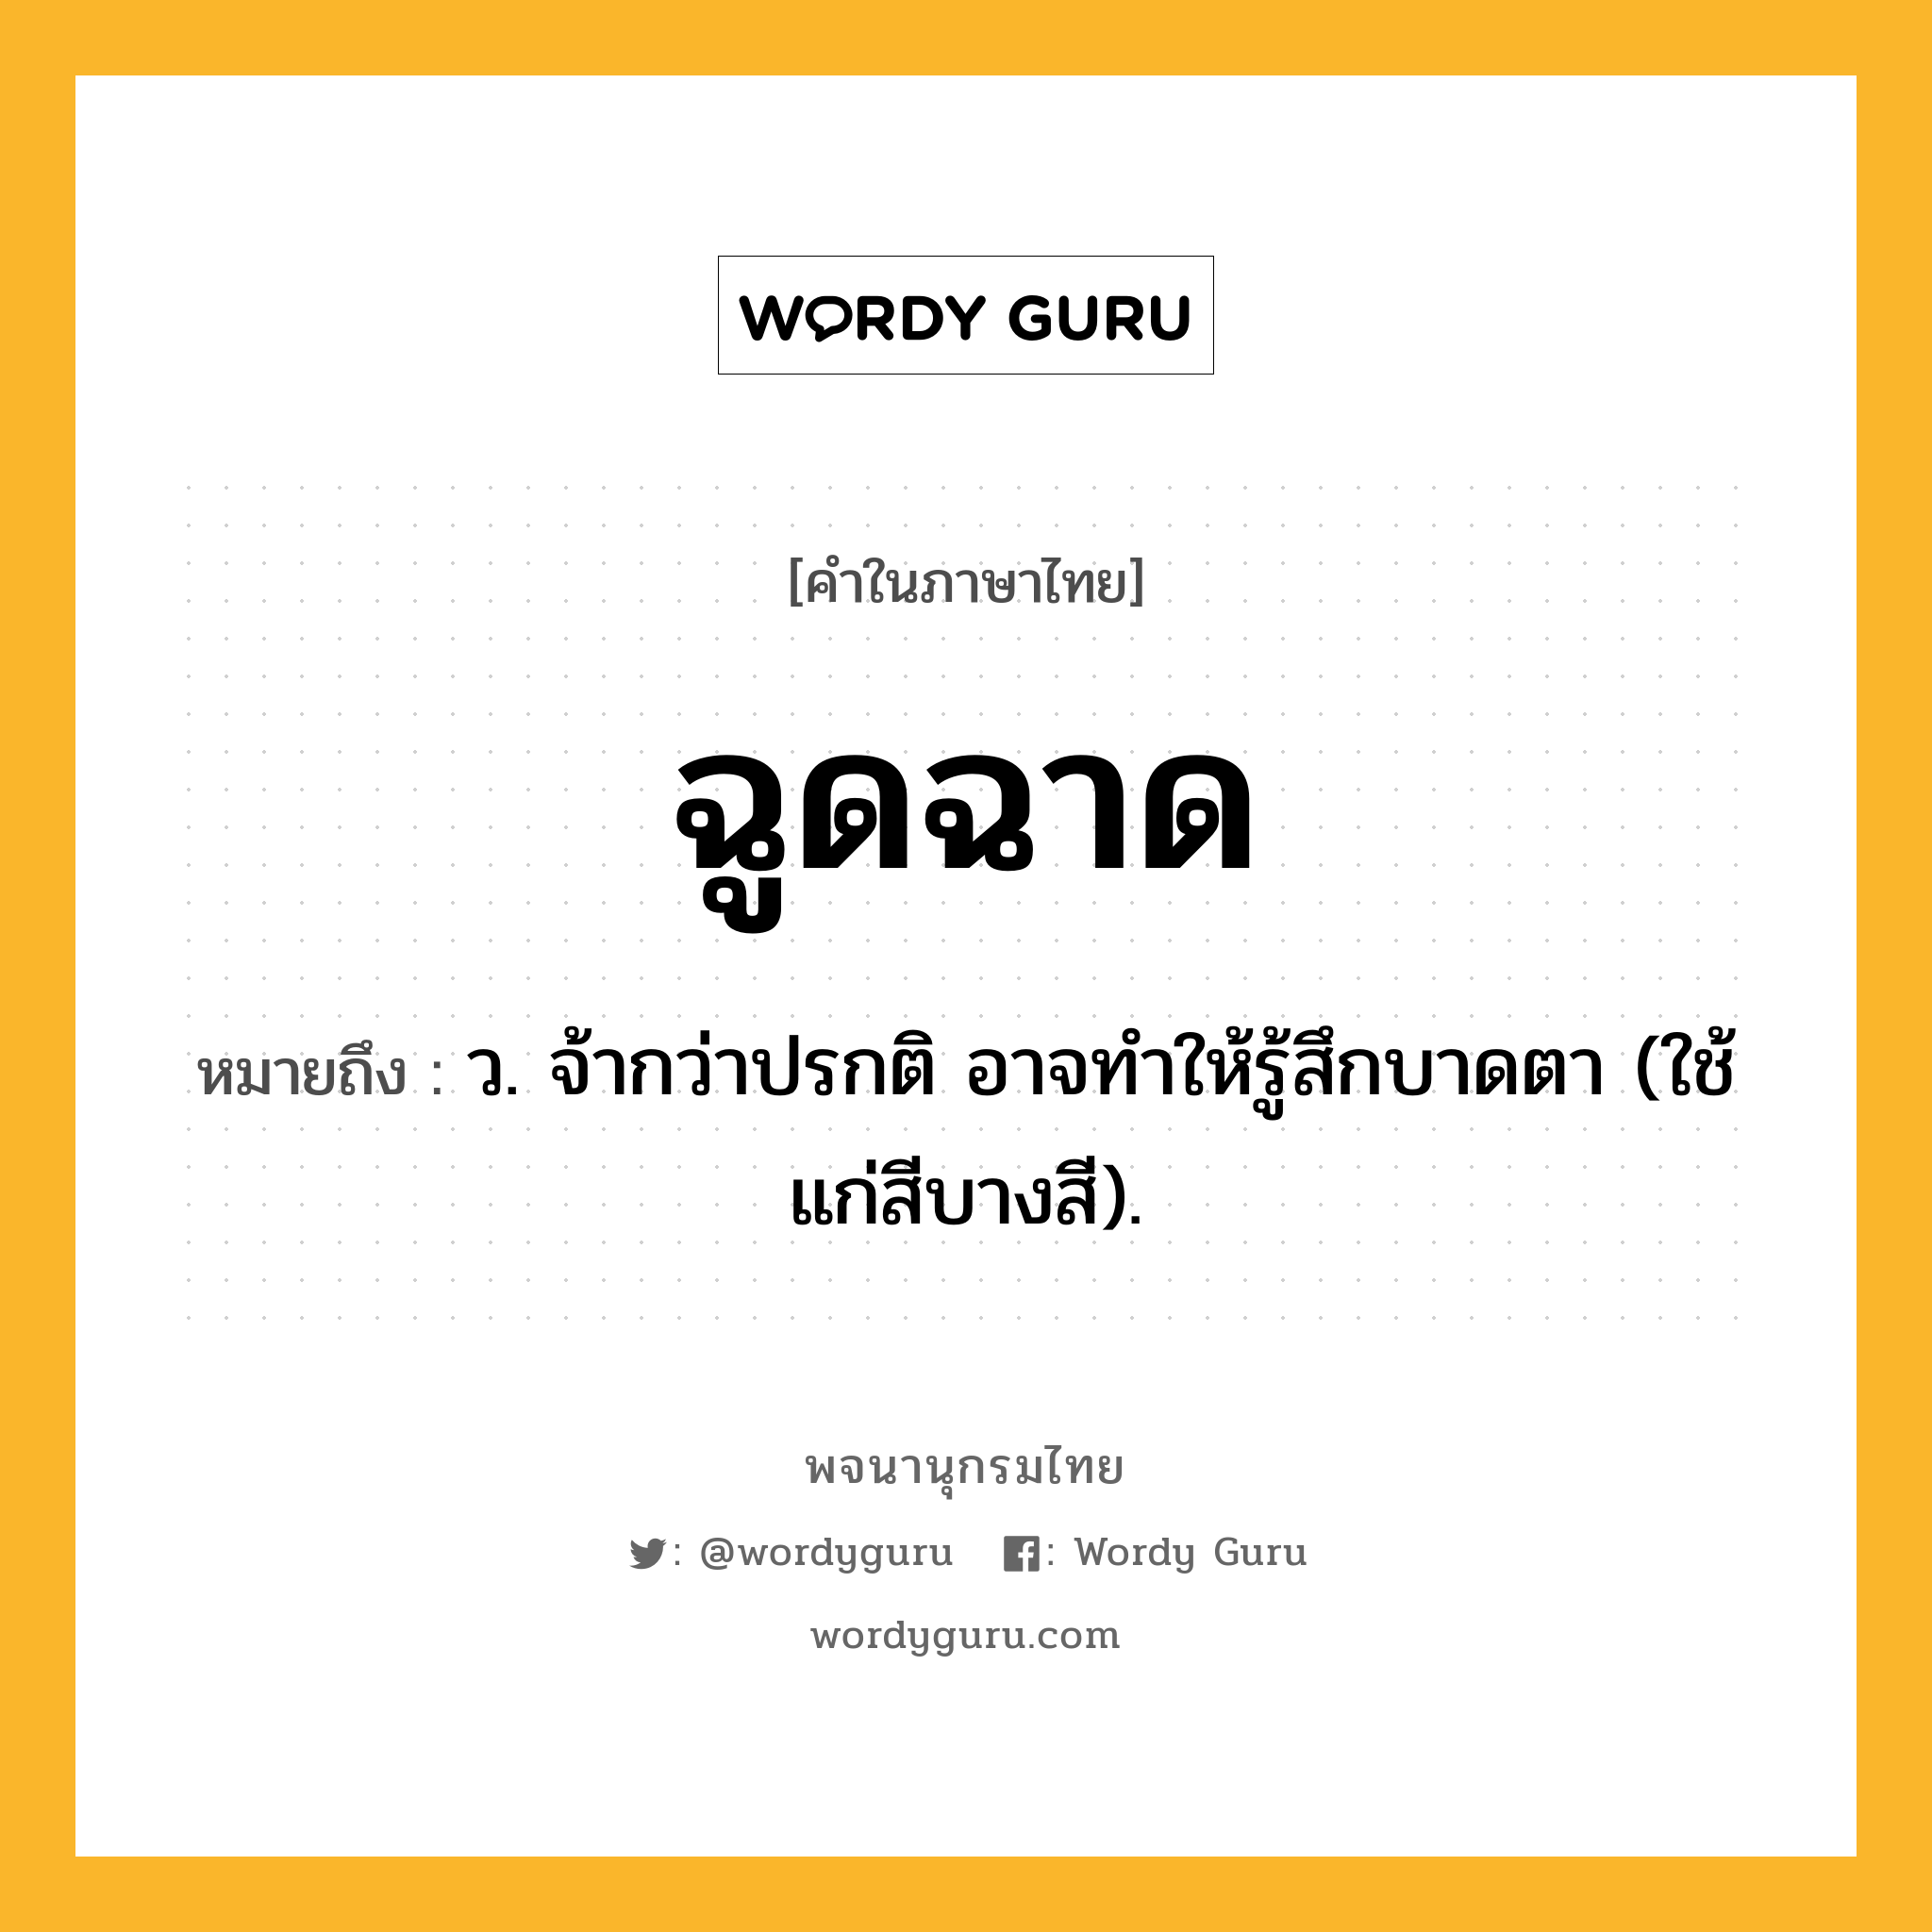 ฉูดฉาด ความหมาย หมายถึงอะไร?, คำในภาษาไทย ฉูดฉาด หมายถึง ว. จ้ากว่าปรกติ อาจทําให้รู้สึกบาดตา (ใช้แก่สีบางสี).